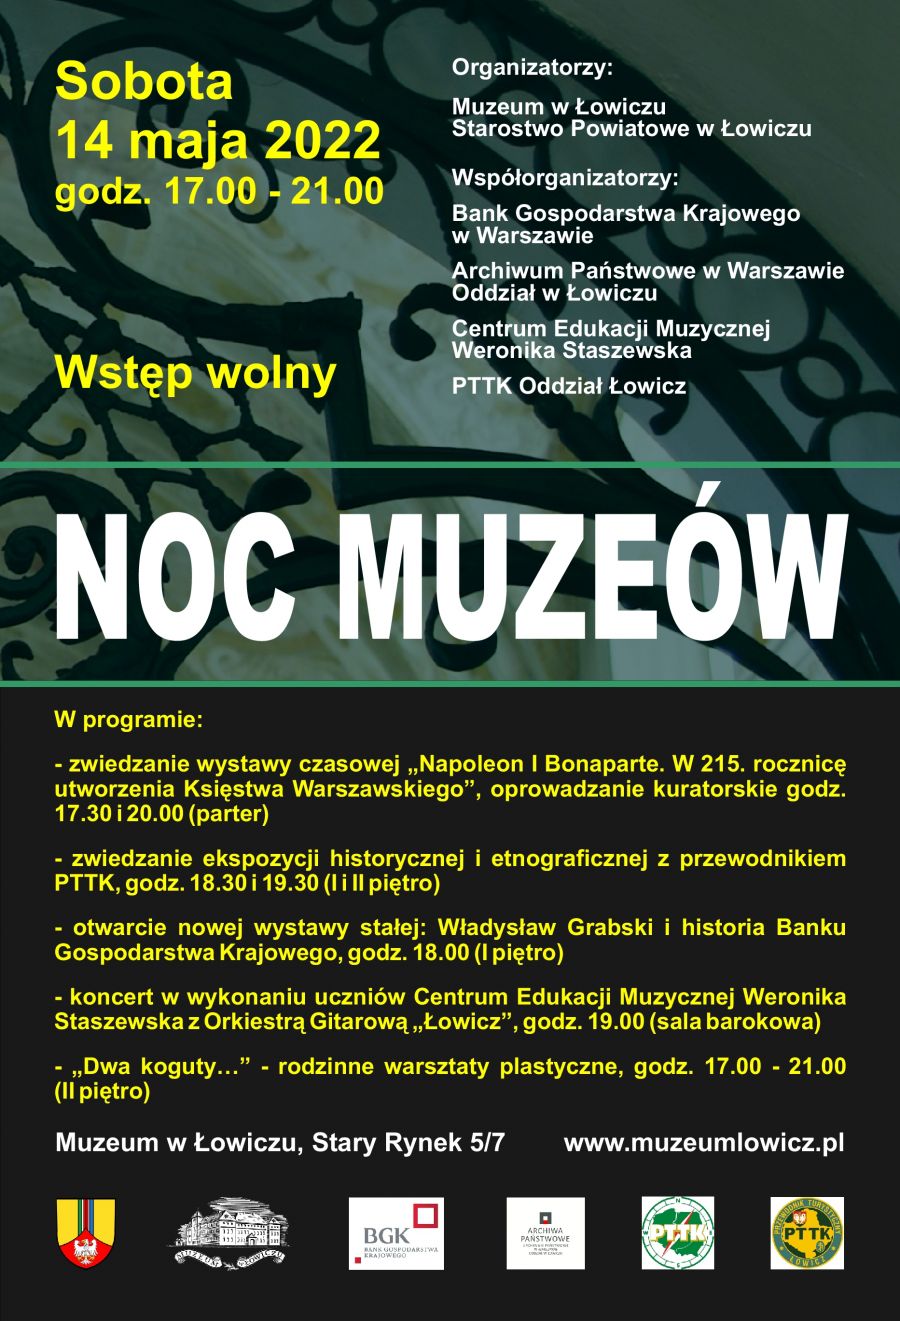 noc muzeow 2022-001